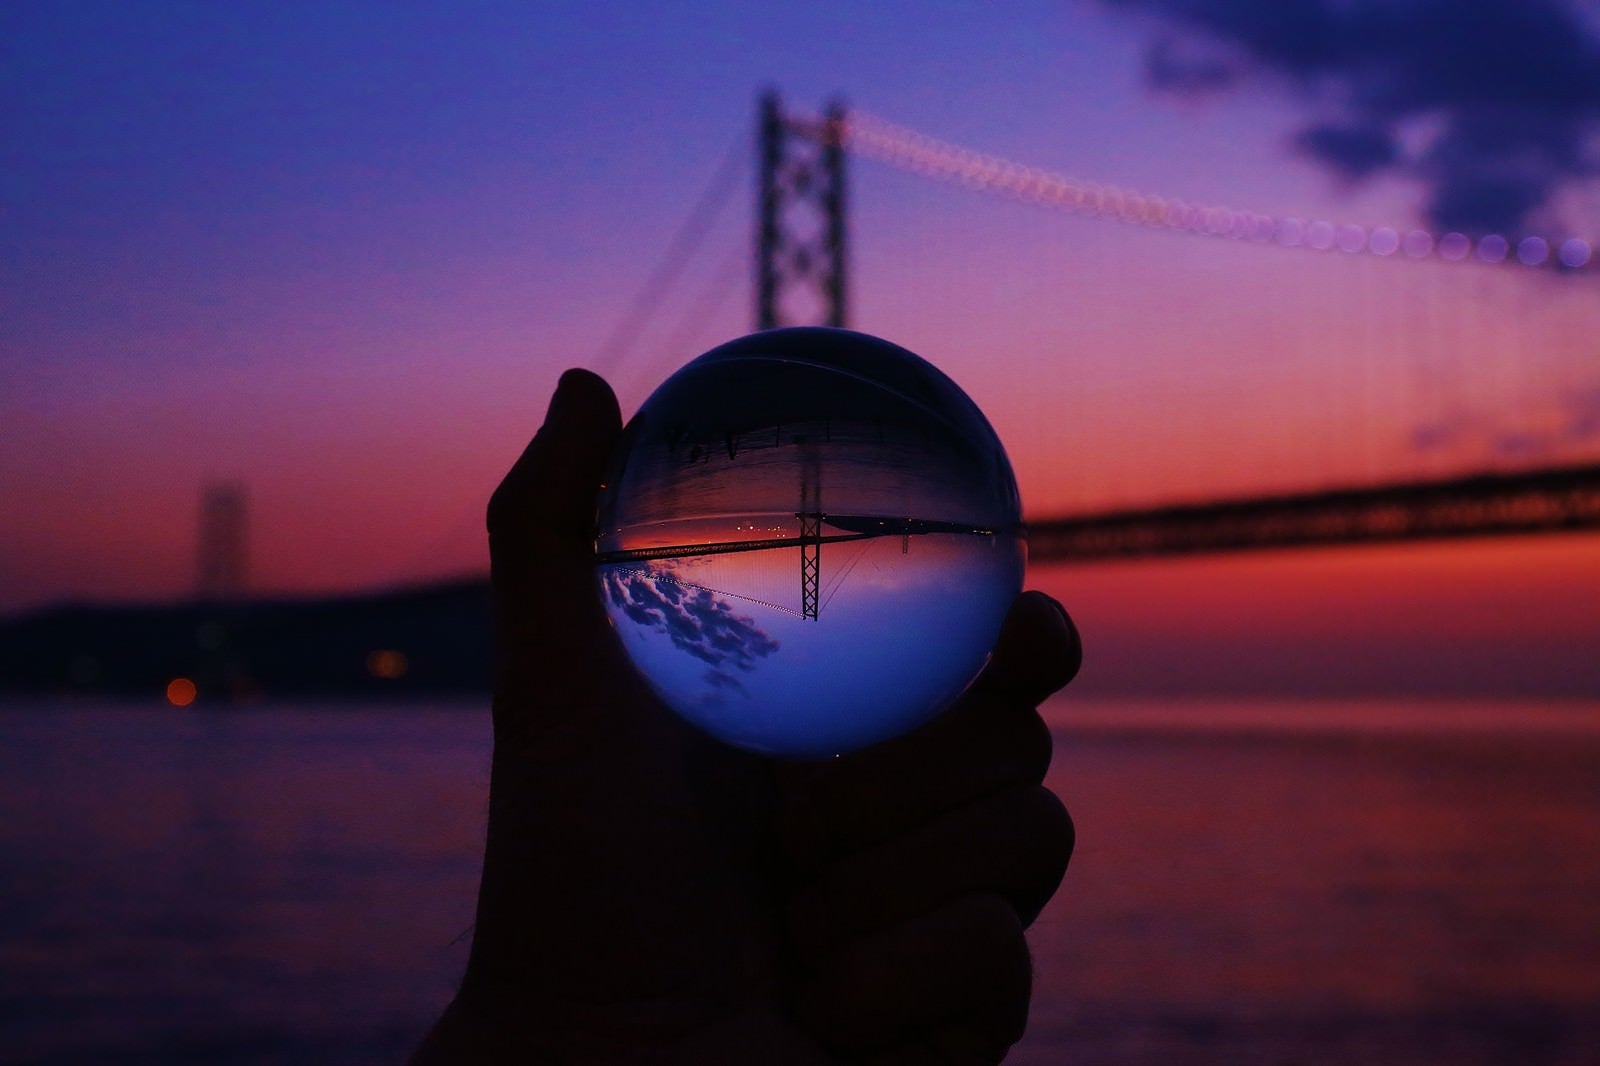 「夕暮れ時のブリッジと反転して映る水晶球」の写真